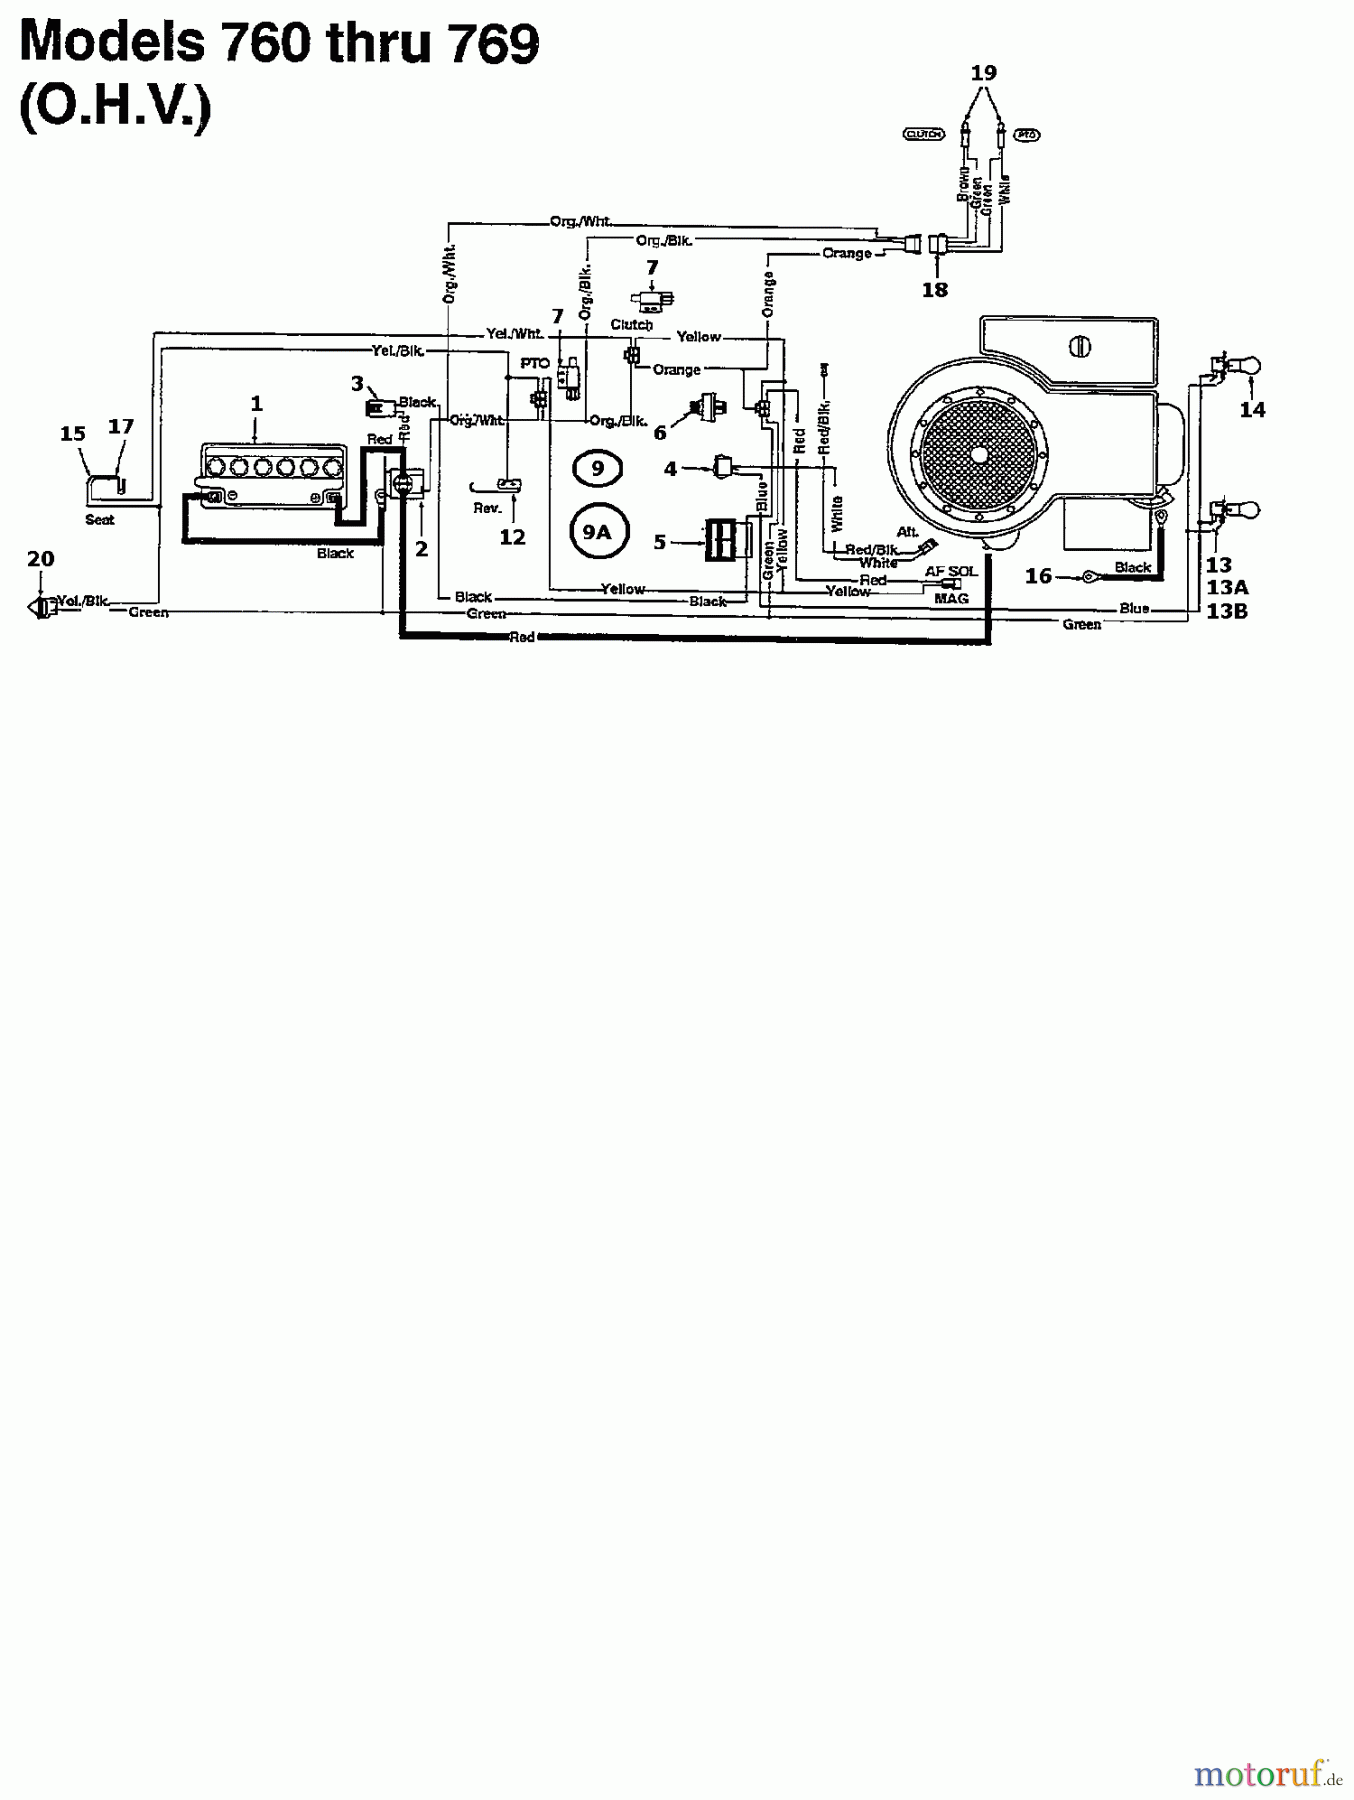  Raiffeisen Rasentraktoren RMH 13/102 135N765N628  (1995) Schaltplan für O.H.V.